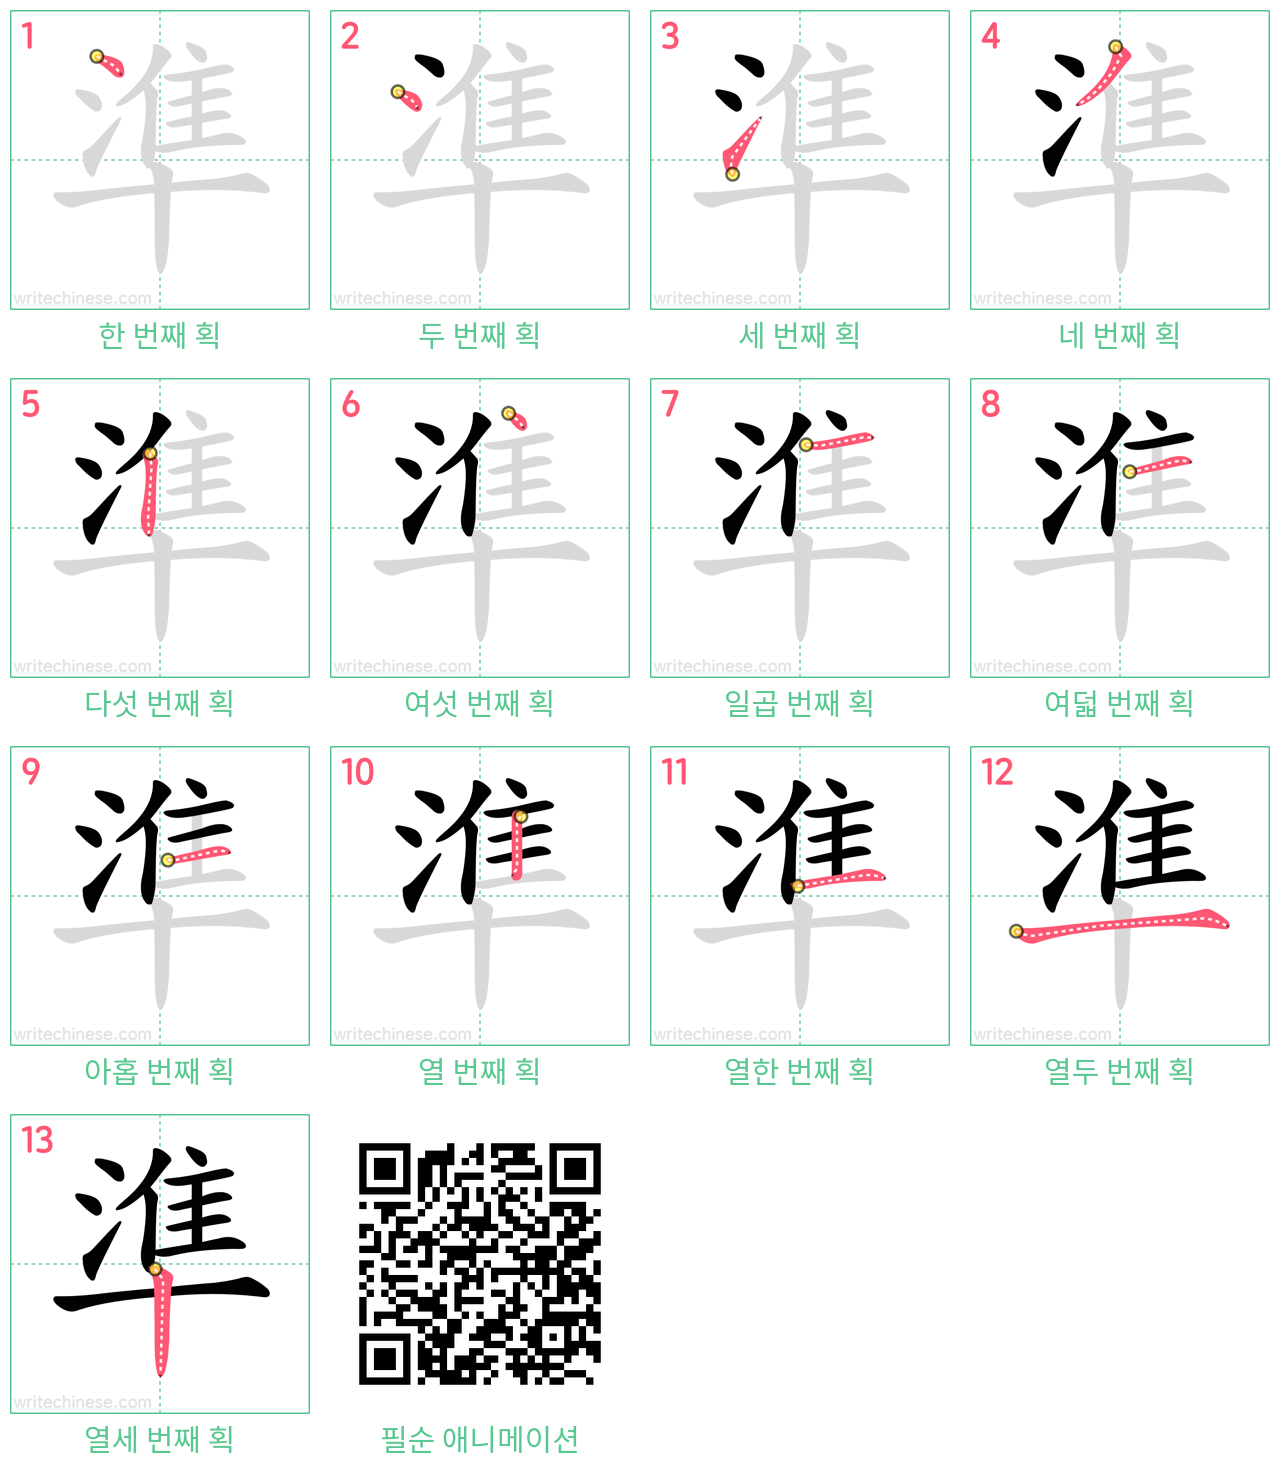 準 step-by-step stroke order diagrams